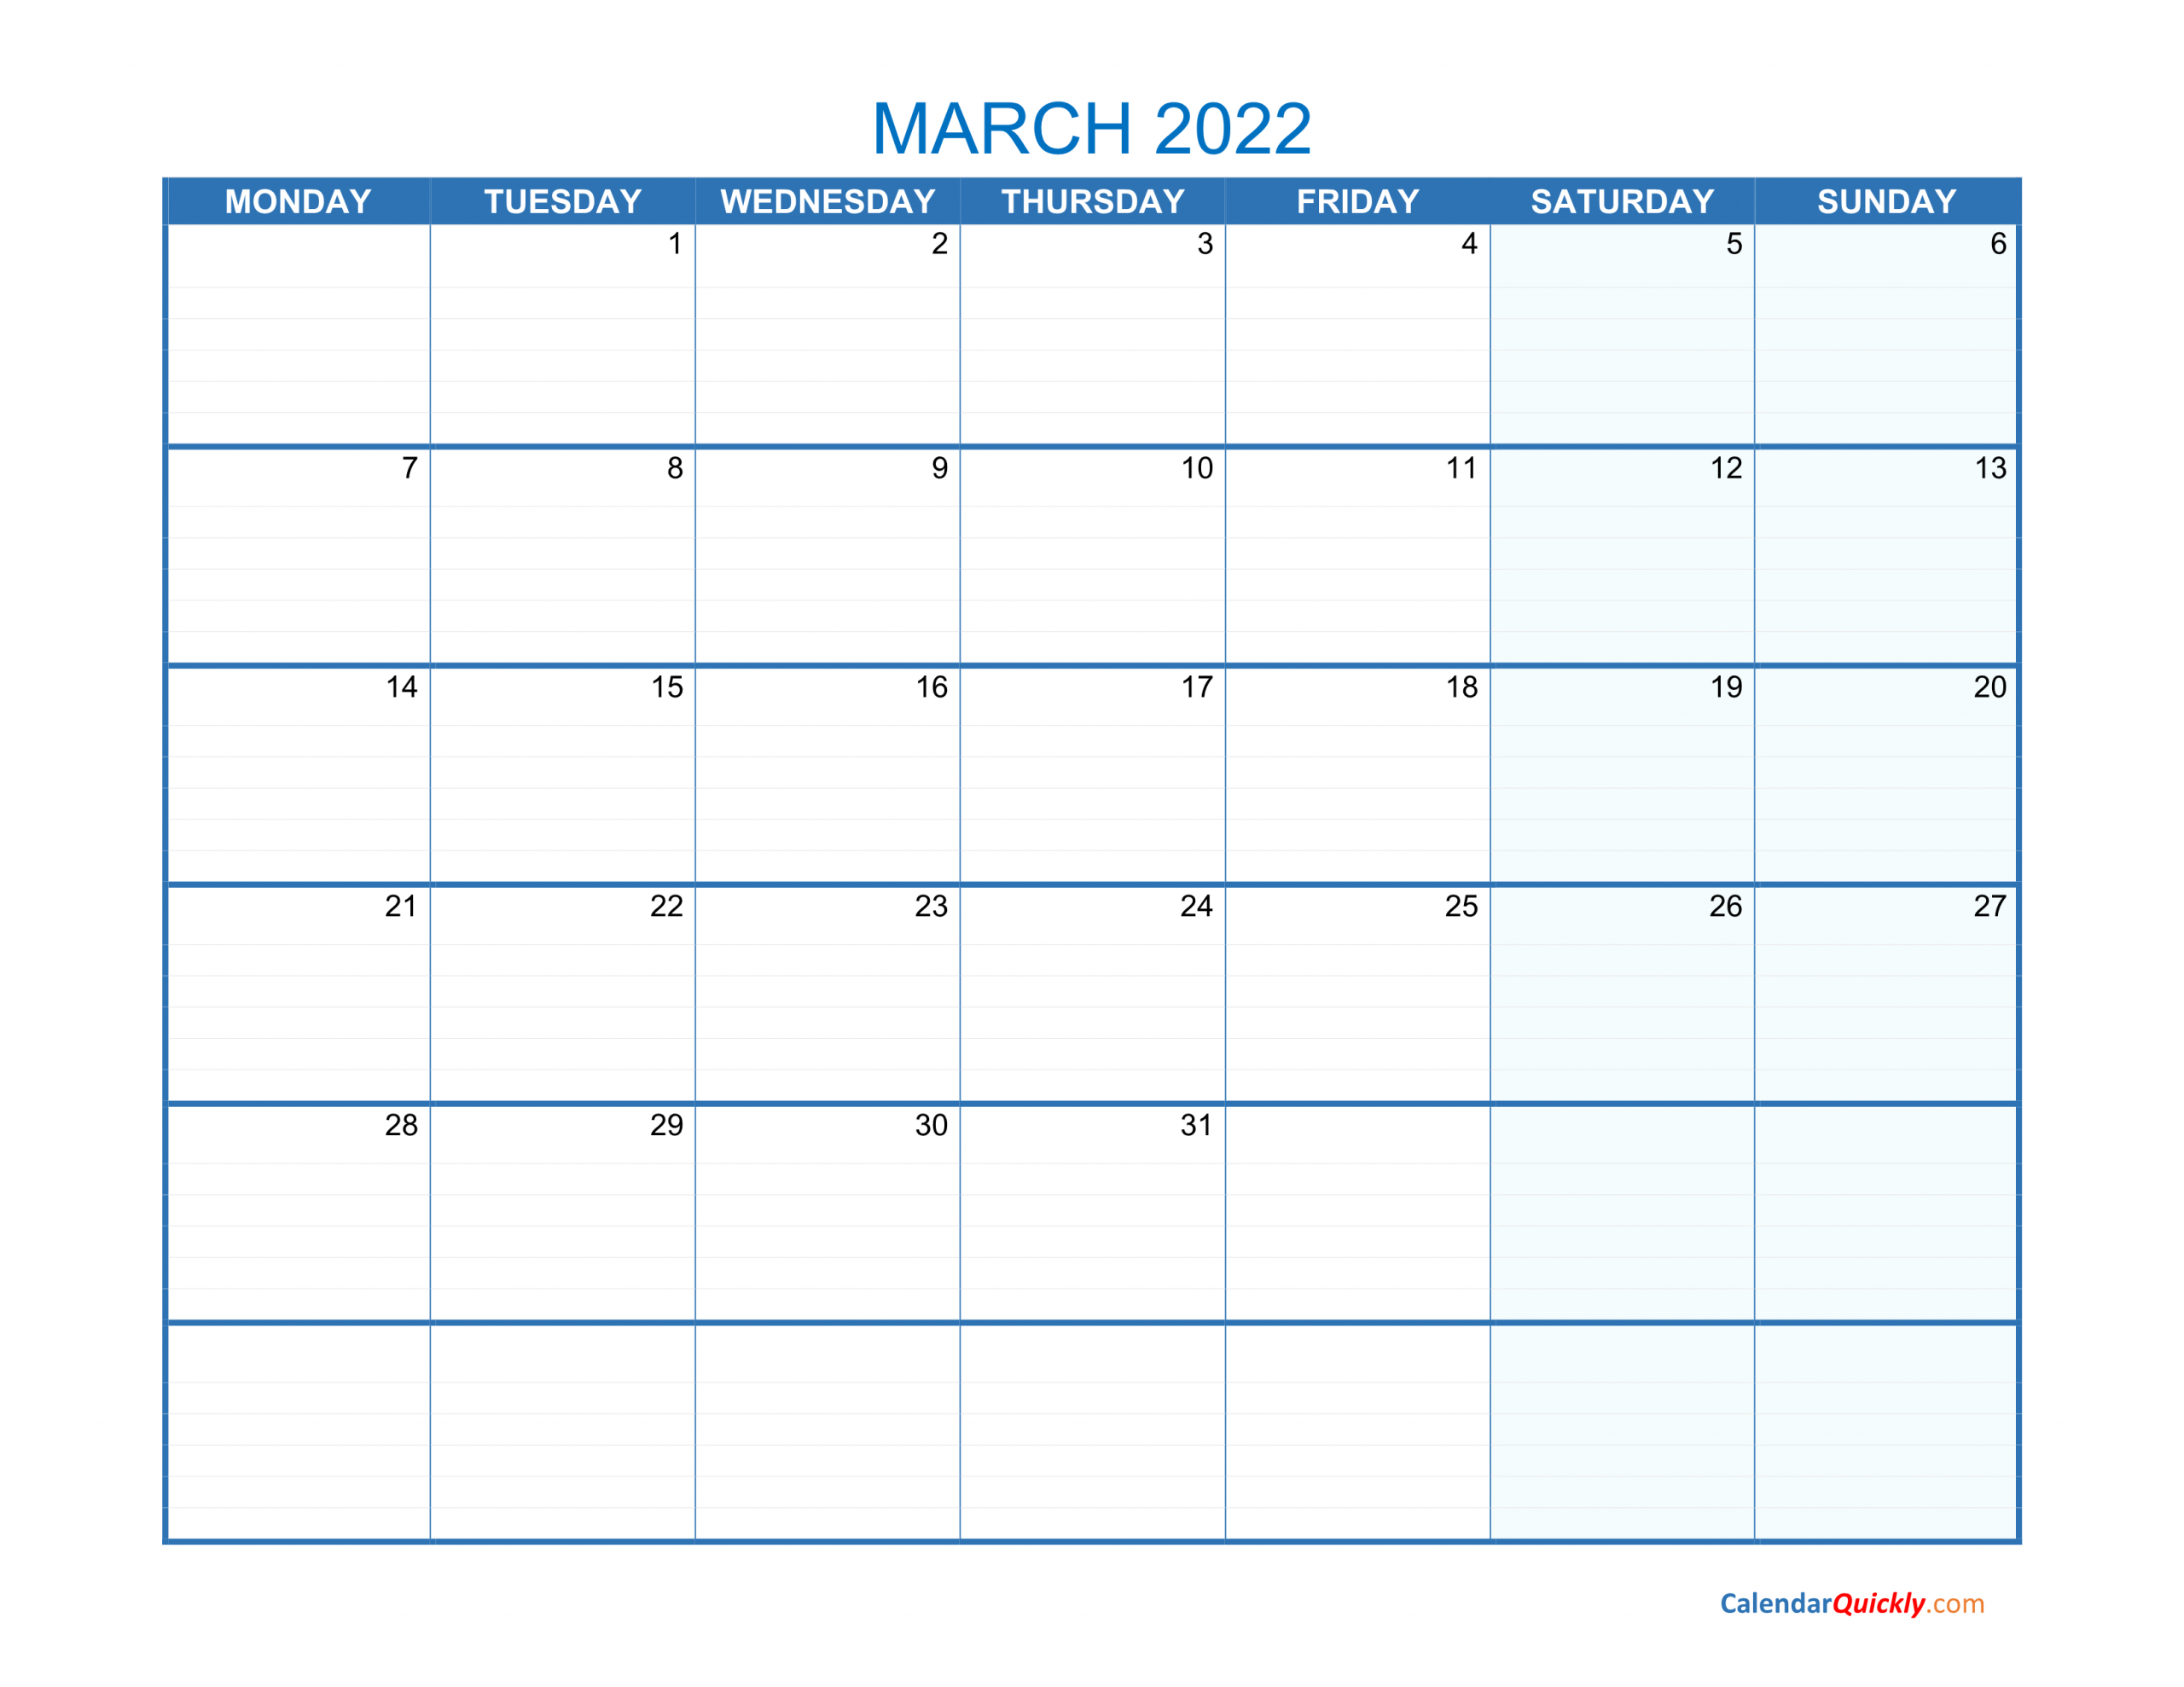 March Monday 2022 Blank Calendar | Calendar Quickly